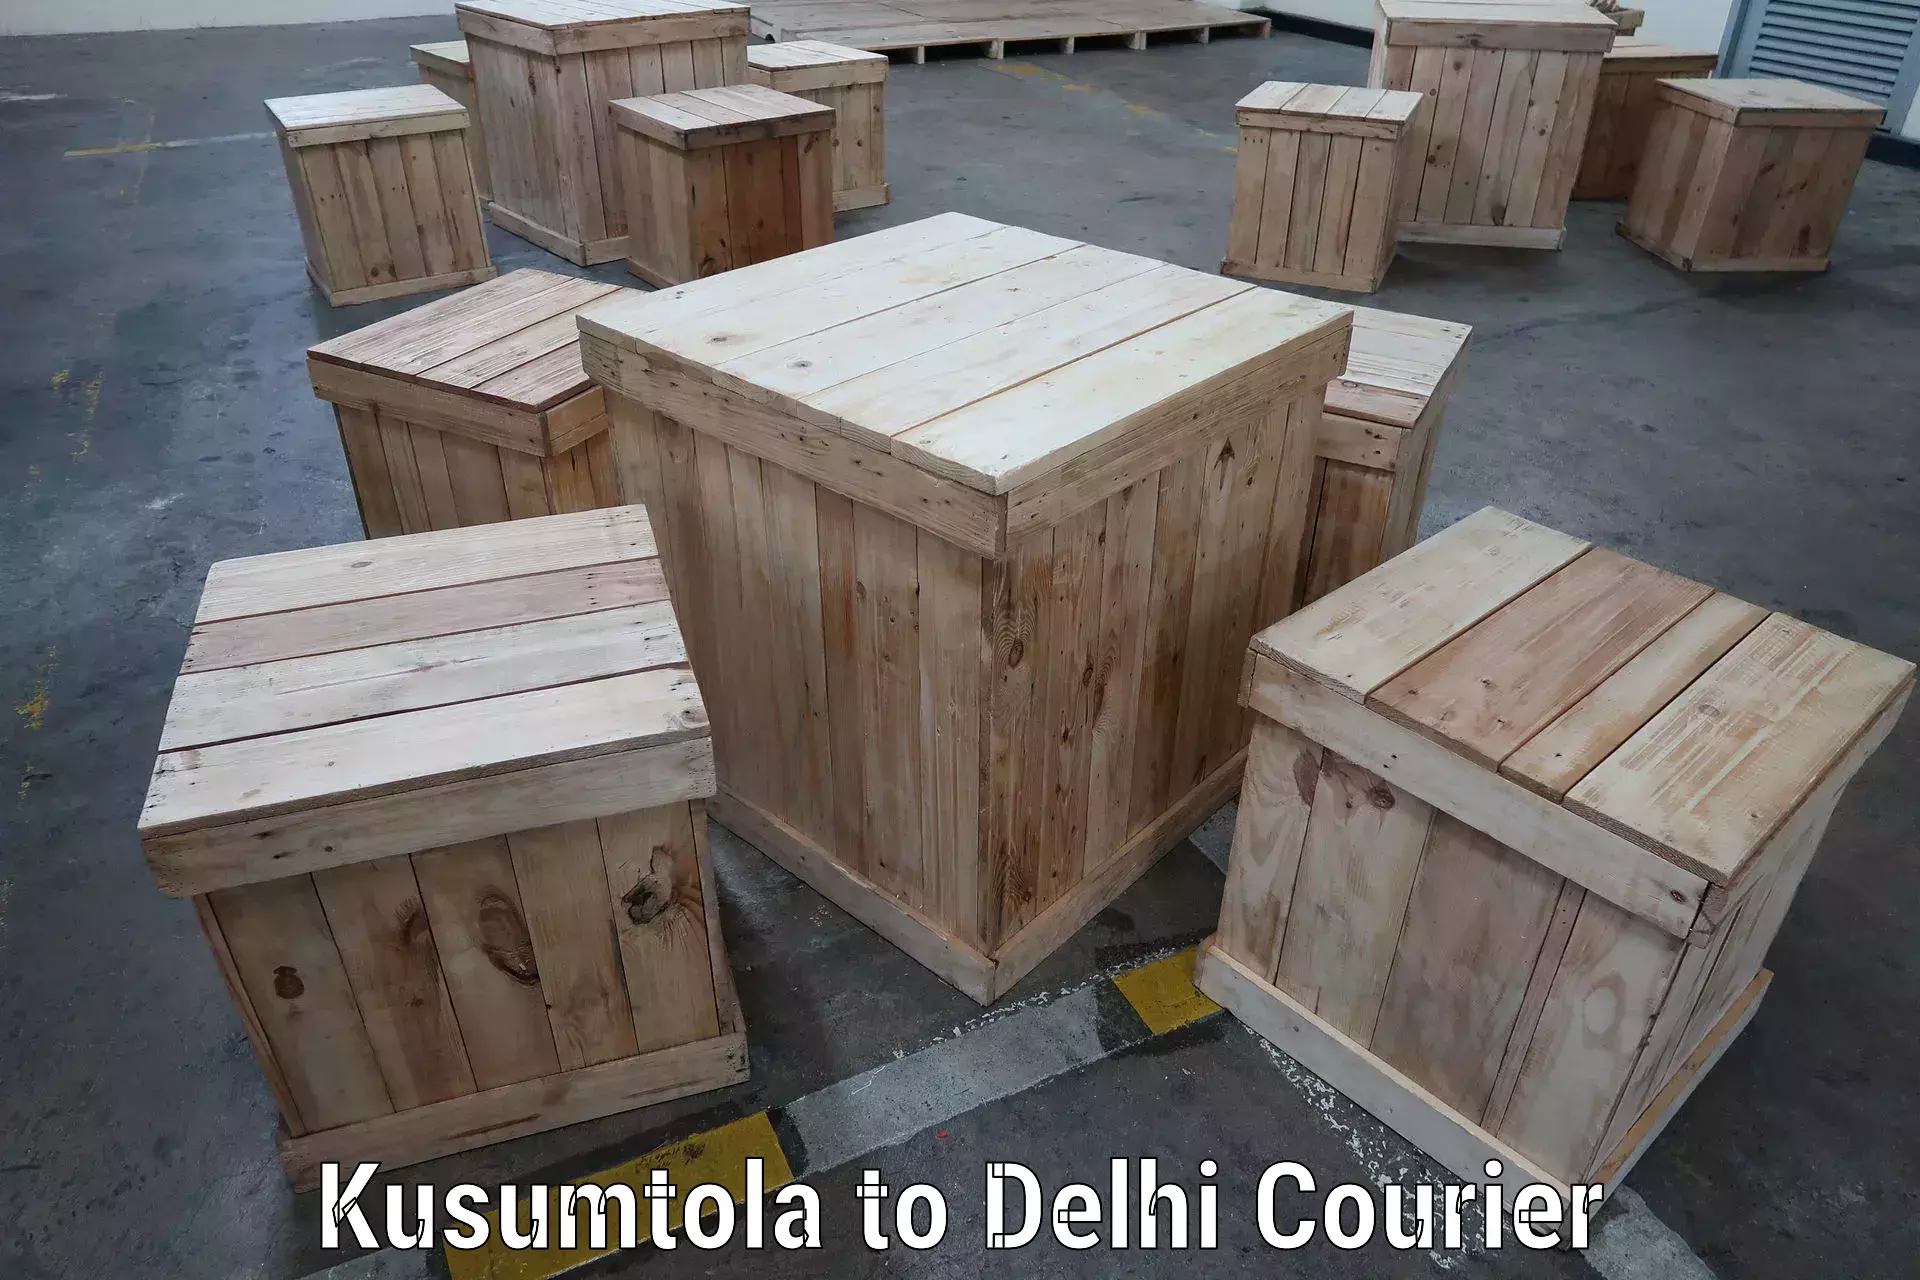 Express postal services Kusumtola to Jamia Millia Islamia New Delhi